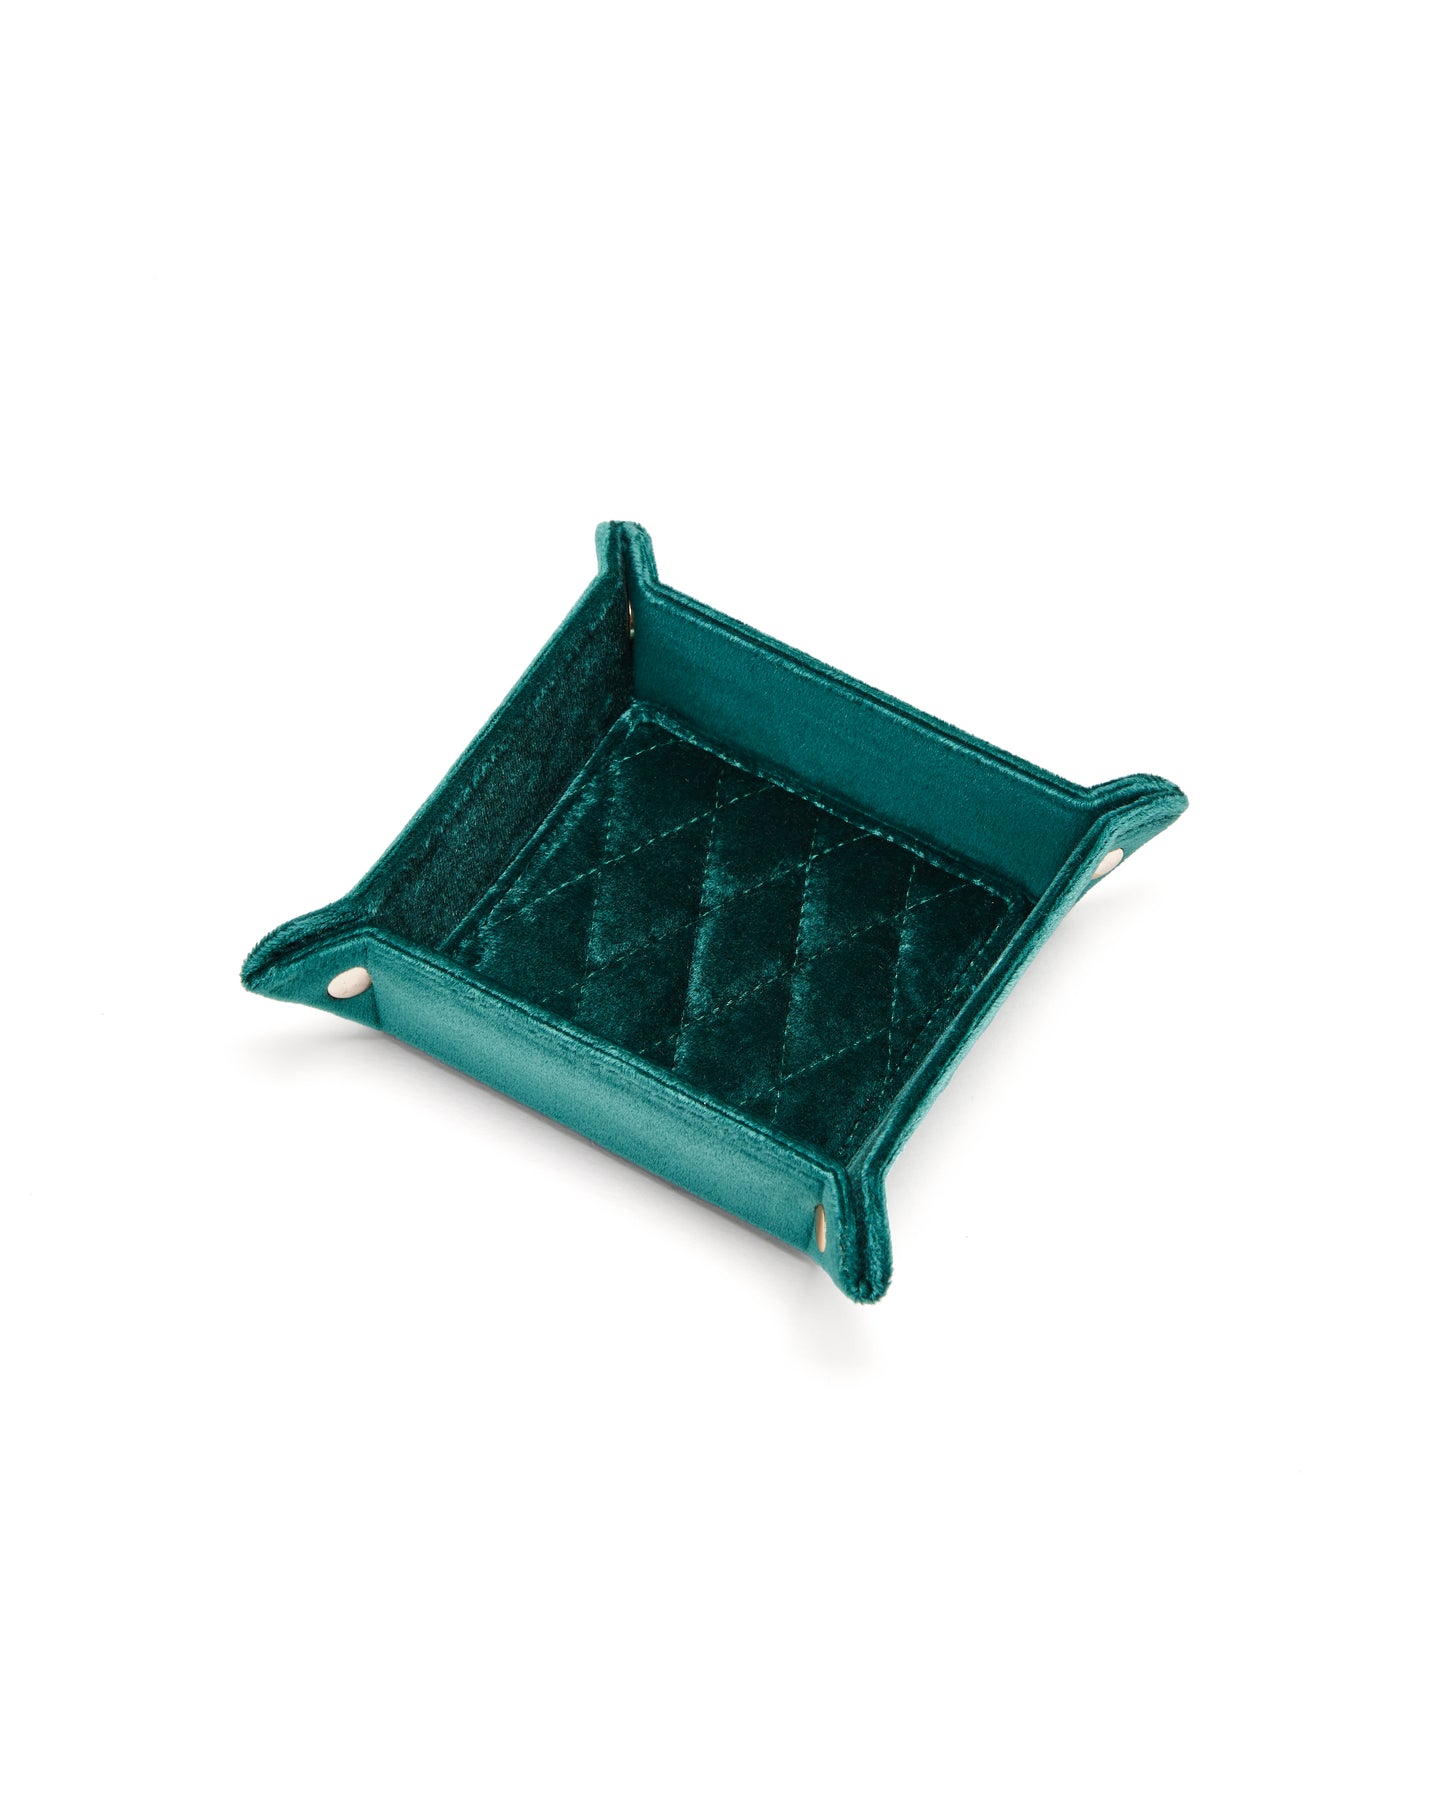 Taschenleerer (S) col. emerald, 10 Stück - direkt bestellbar